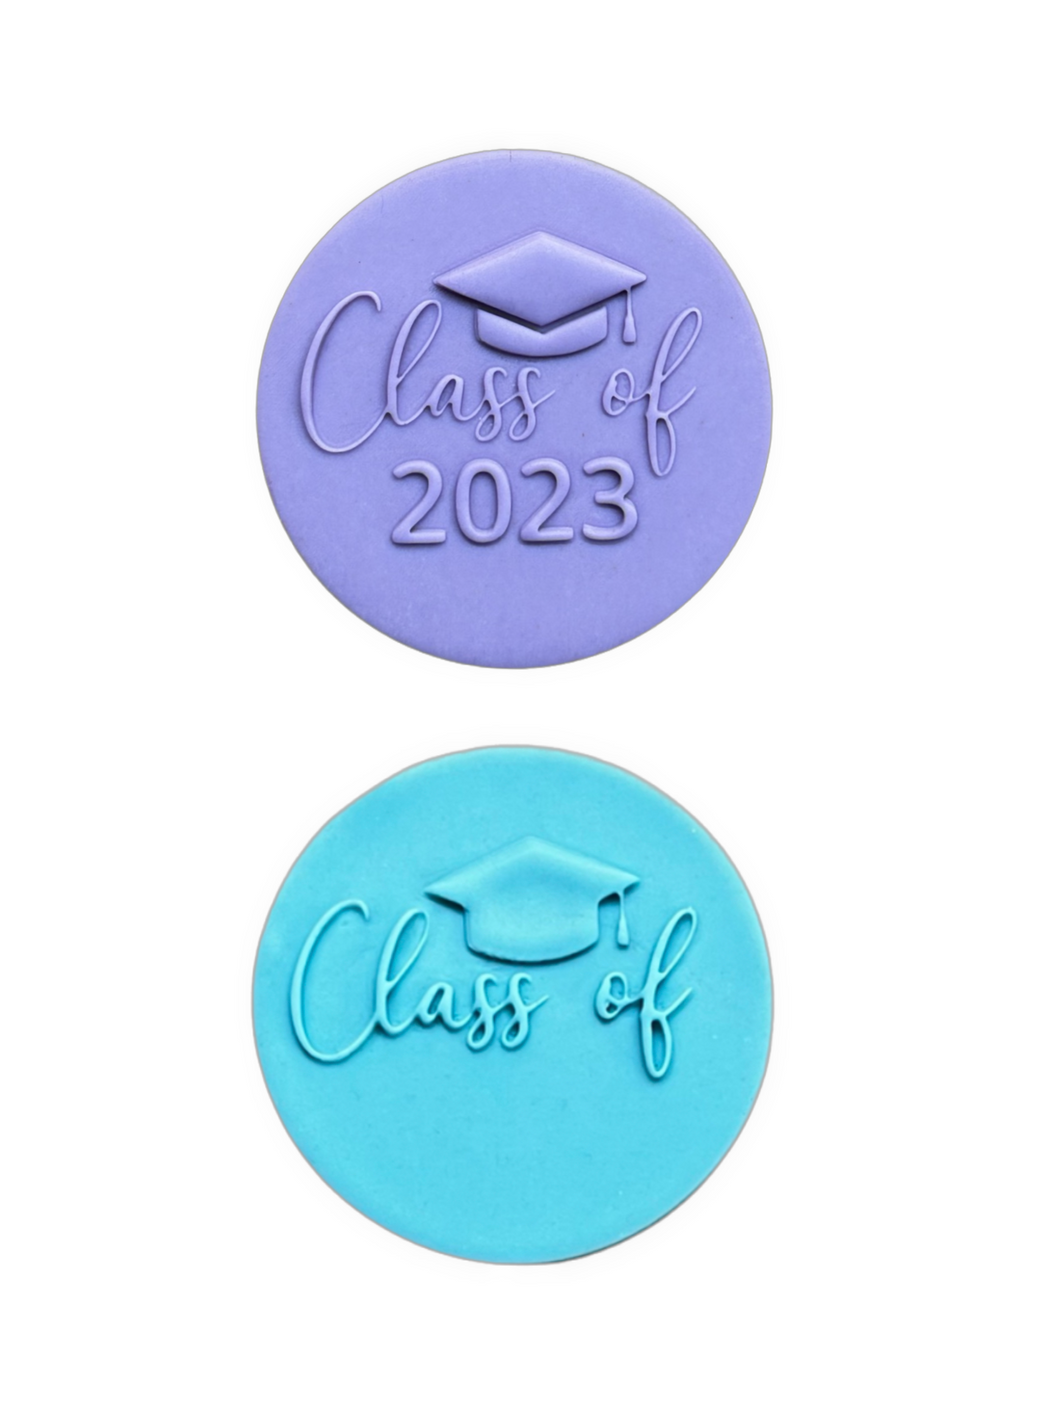 Class of 2023 cookie debosser raised stamp graduation cap